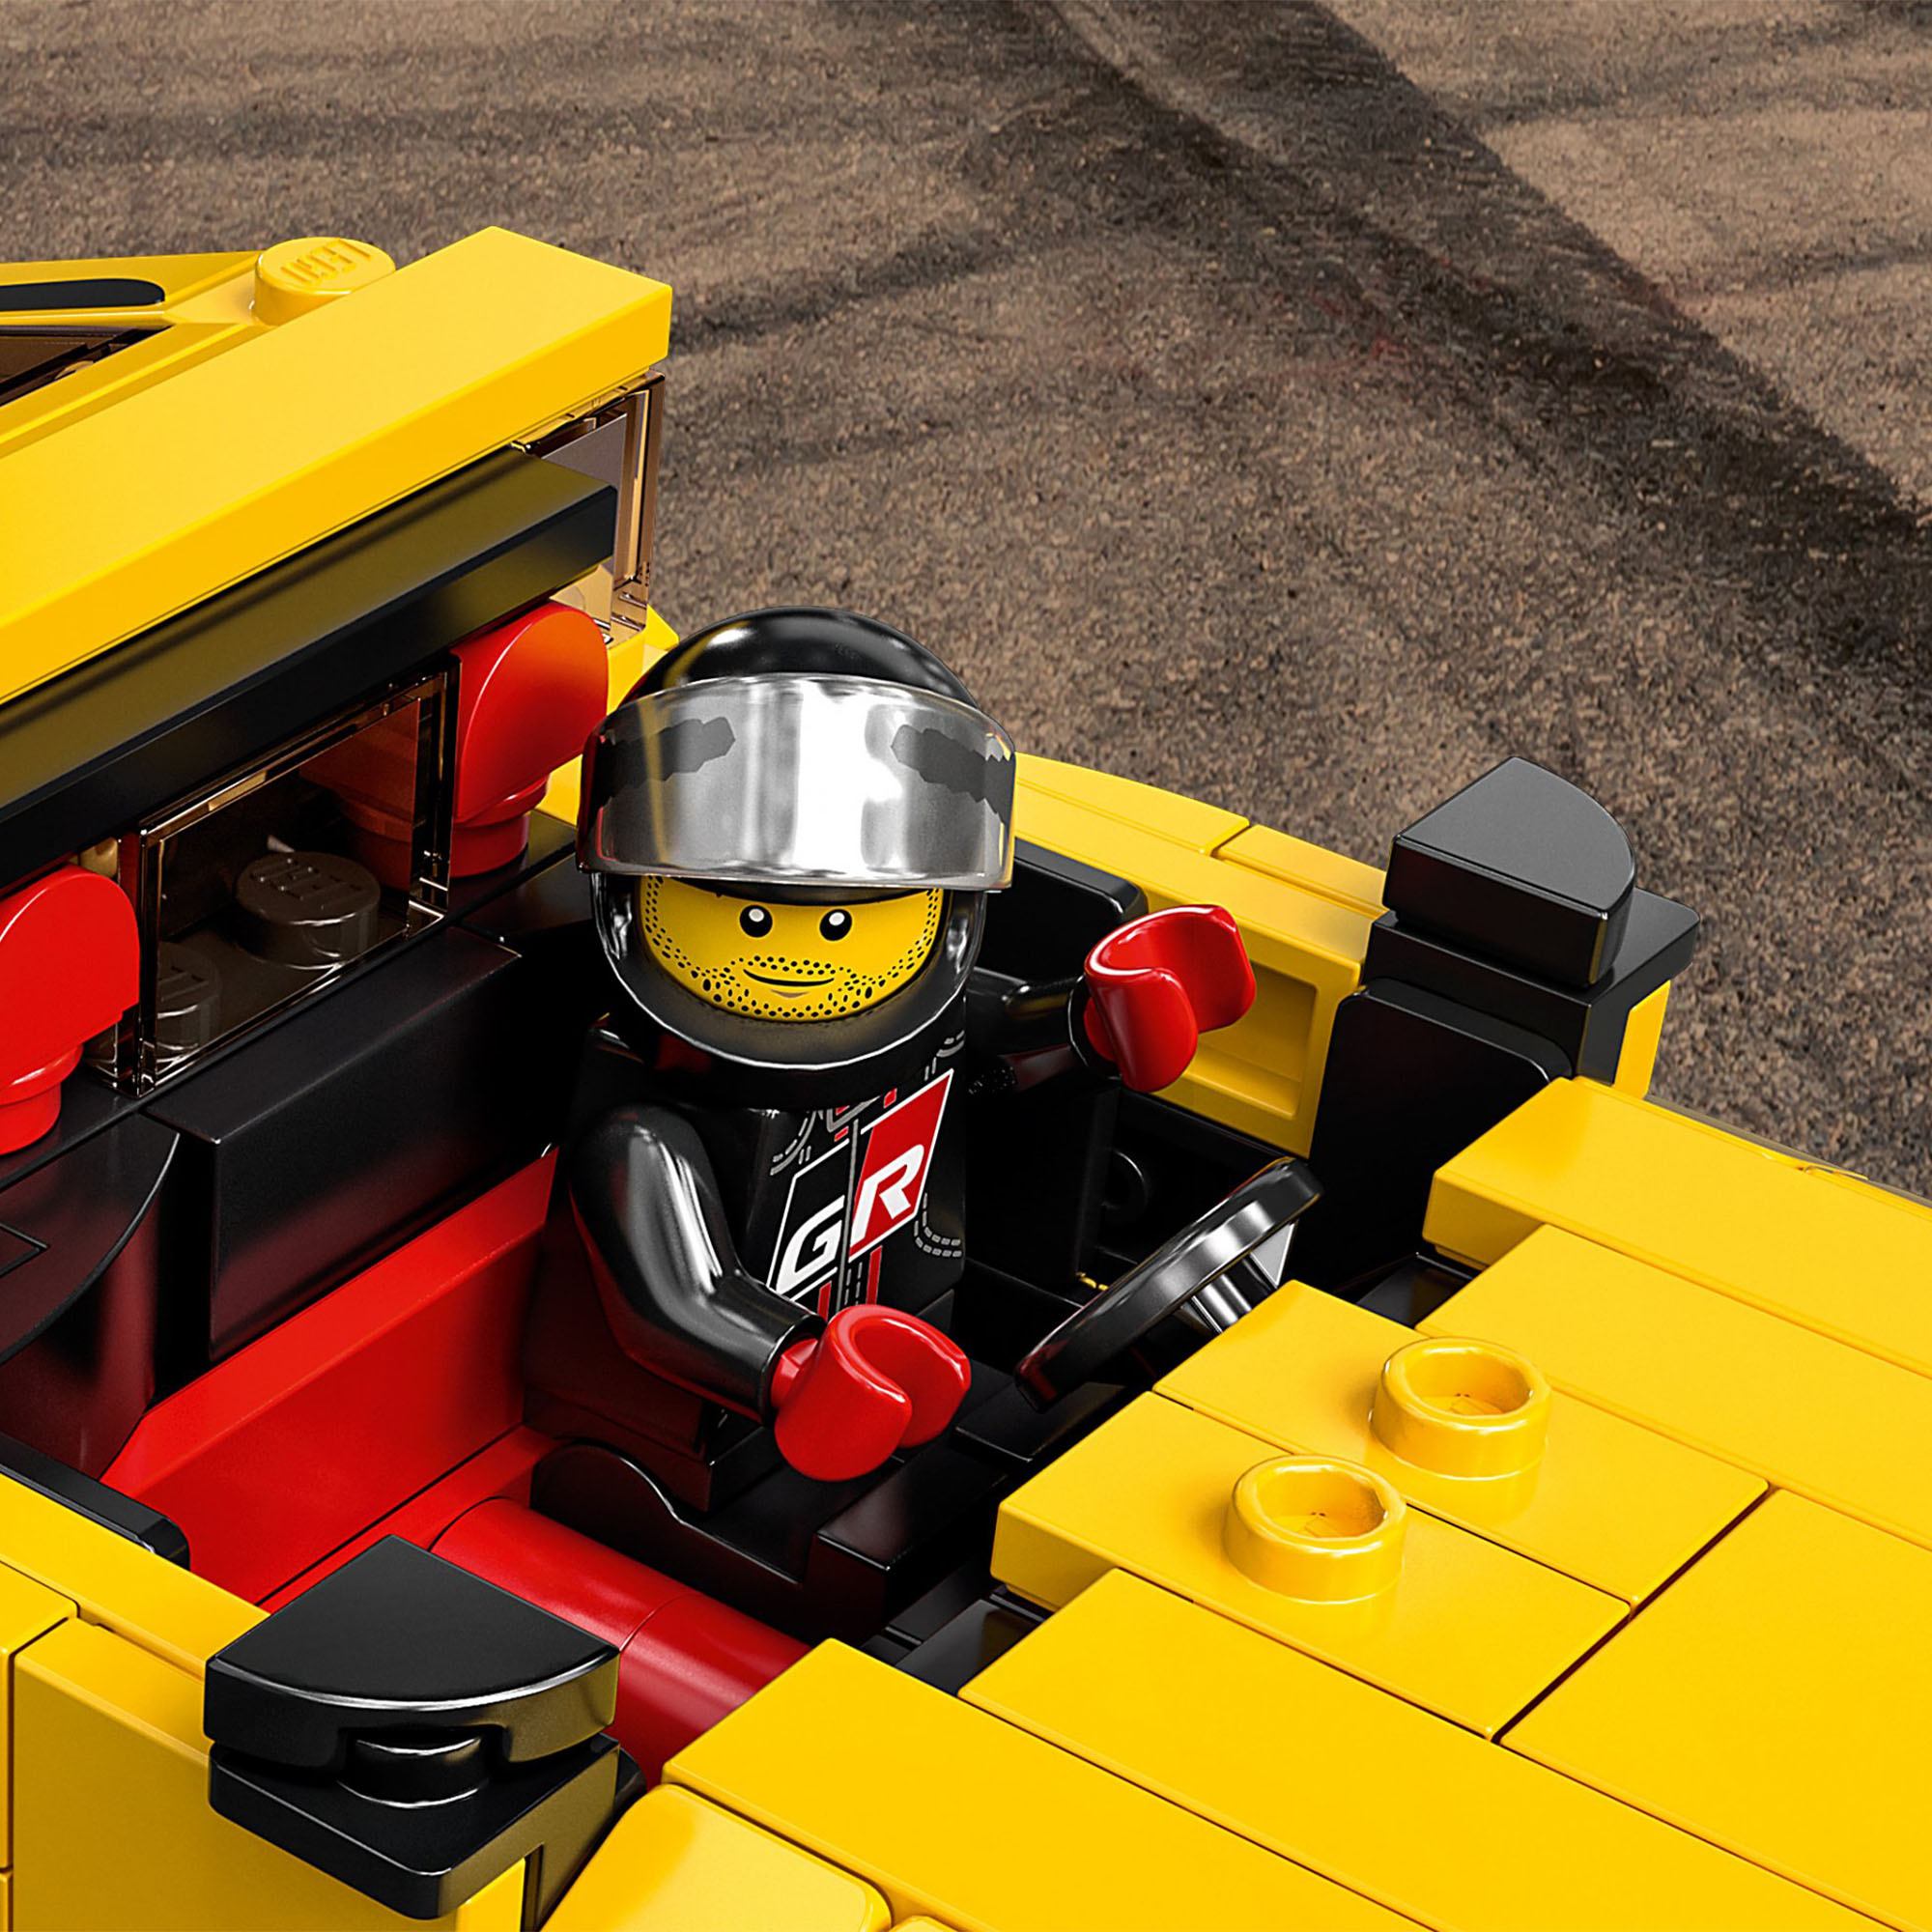 LEGO Speed Champions Toyota GR Supra, Macchina Giocattolo per Bambini di 7 Anni, 76901, , large